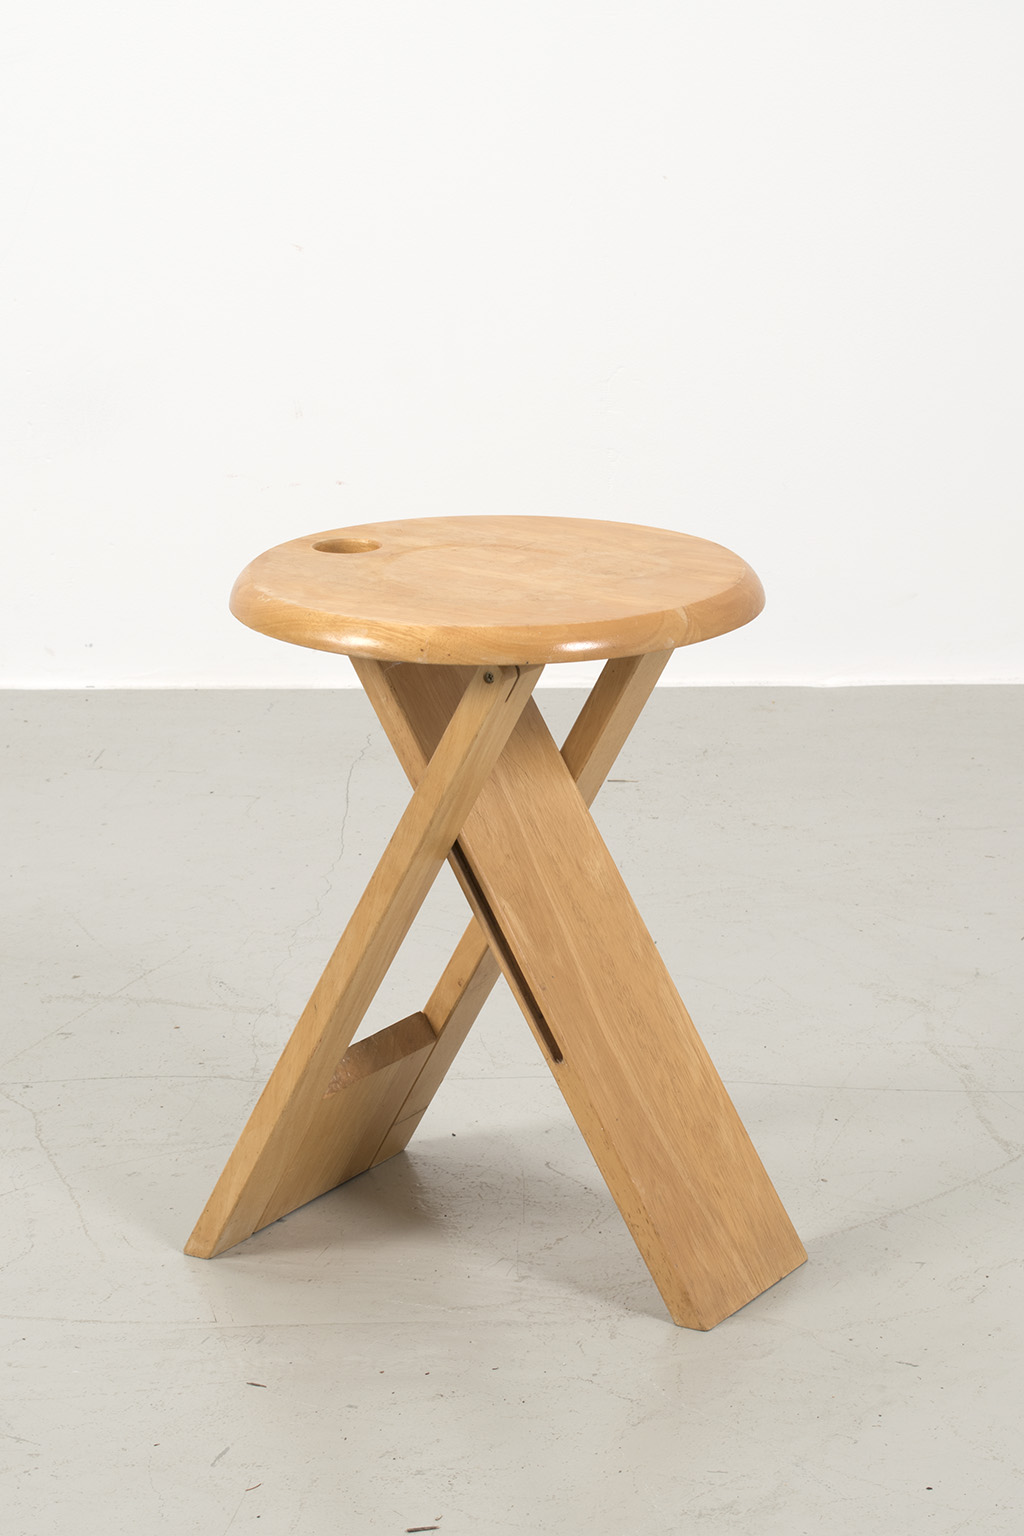 Folding stool Roger Tallon for Sentou